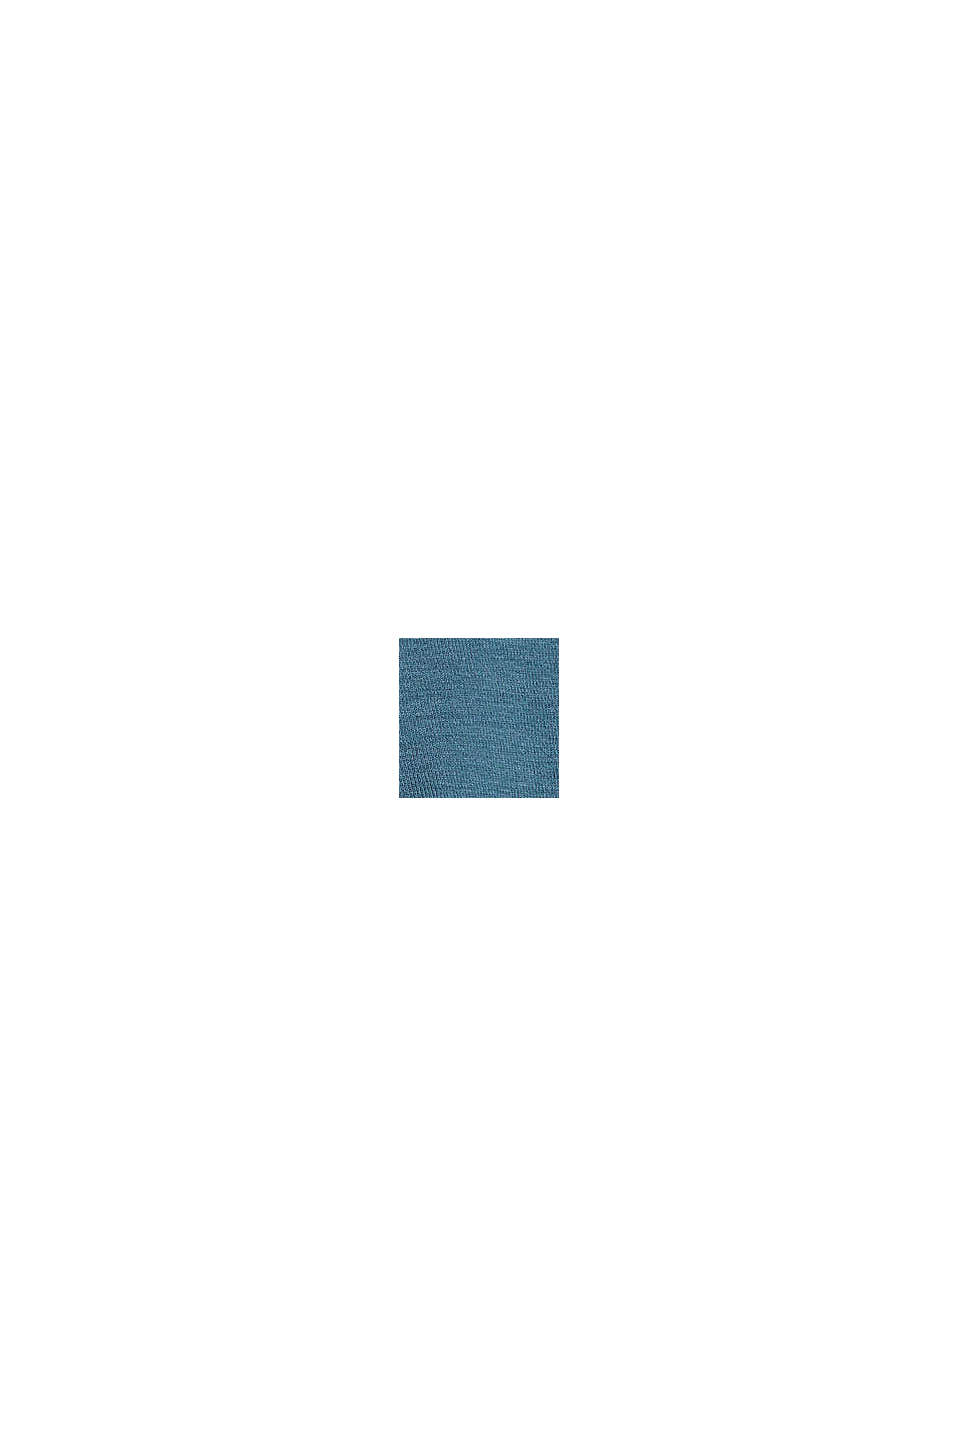 Van TENCEL™: longsleeve met kant, PETROL BLUE, swatch